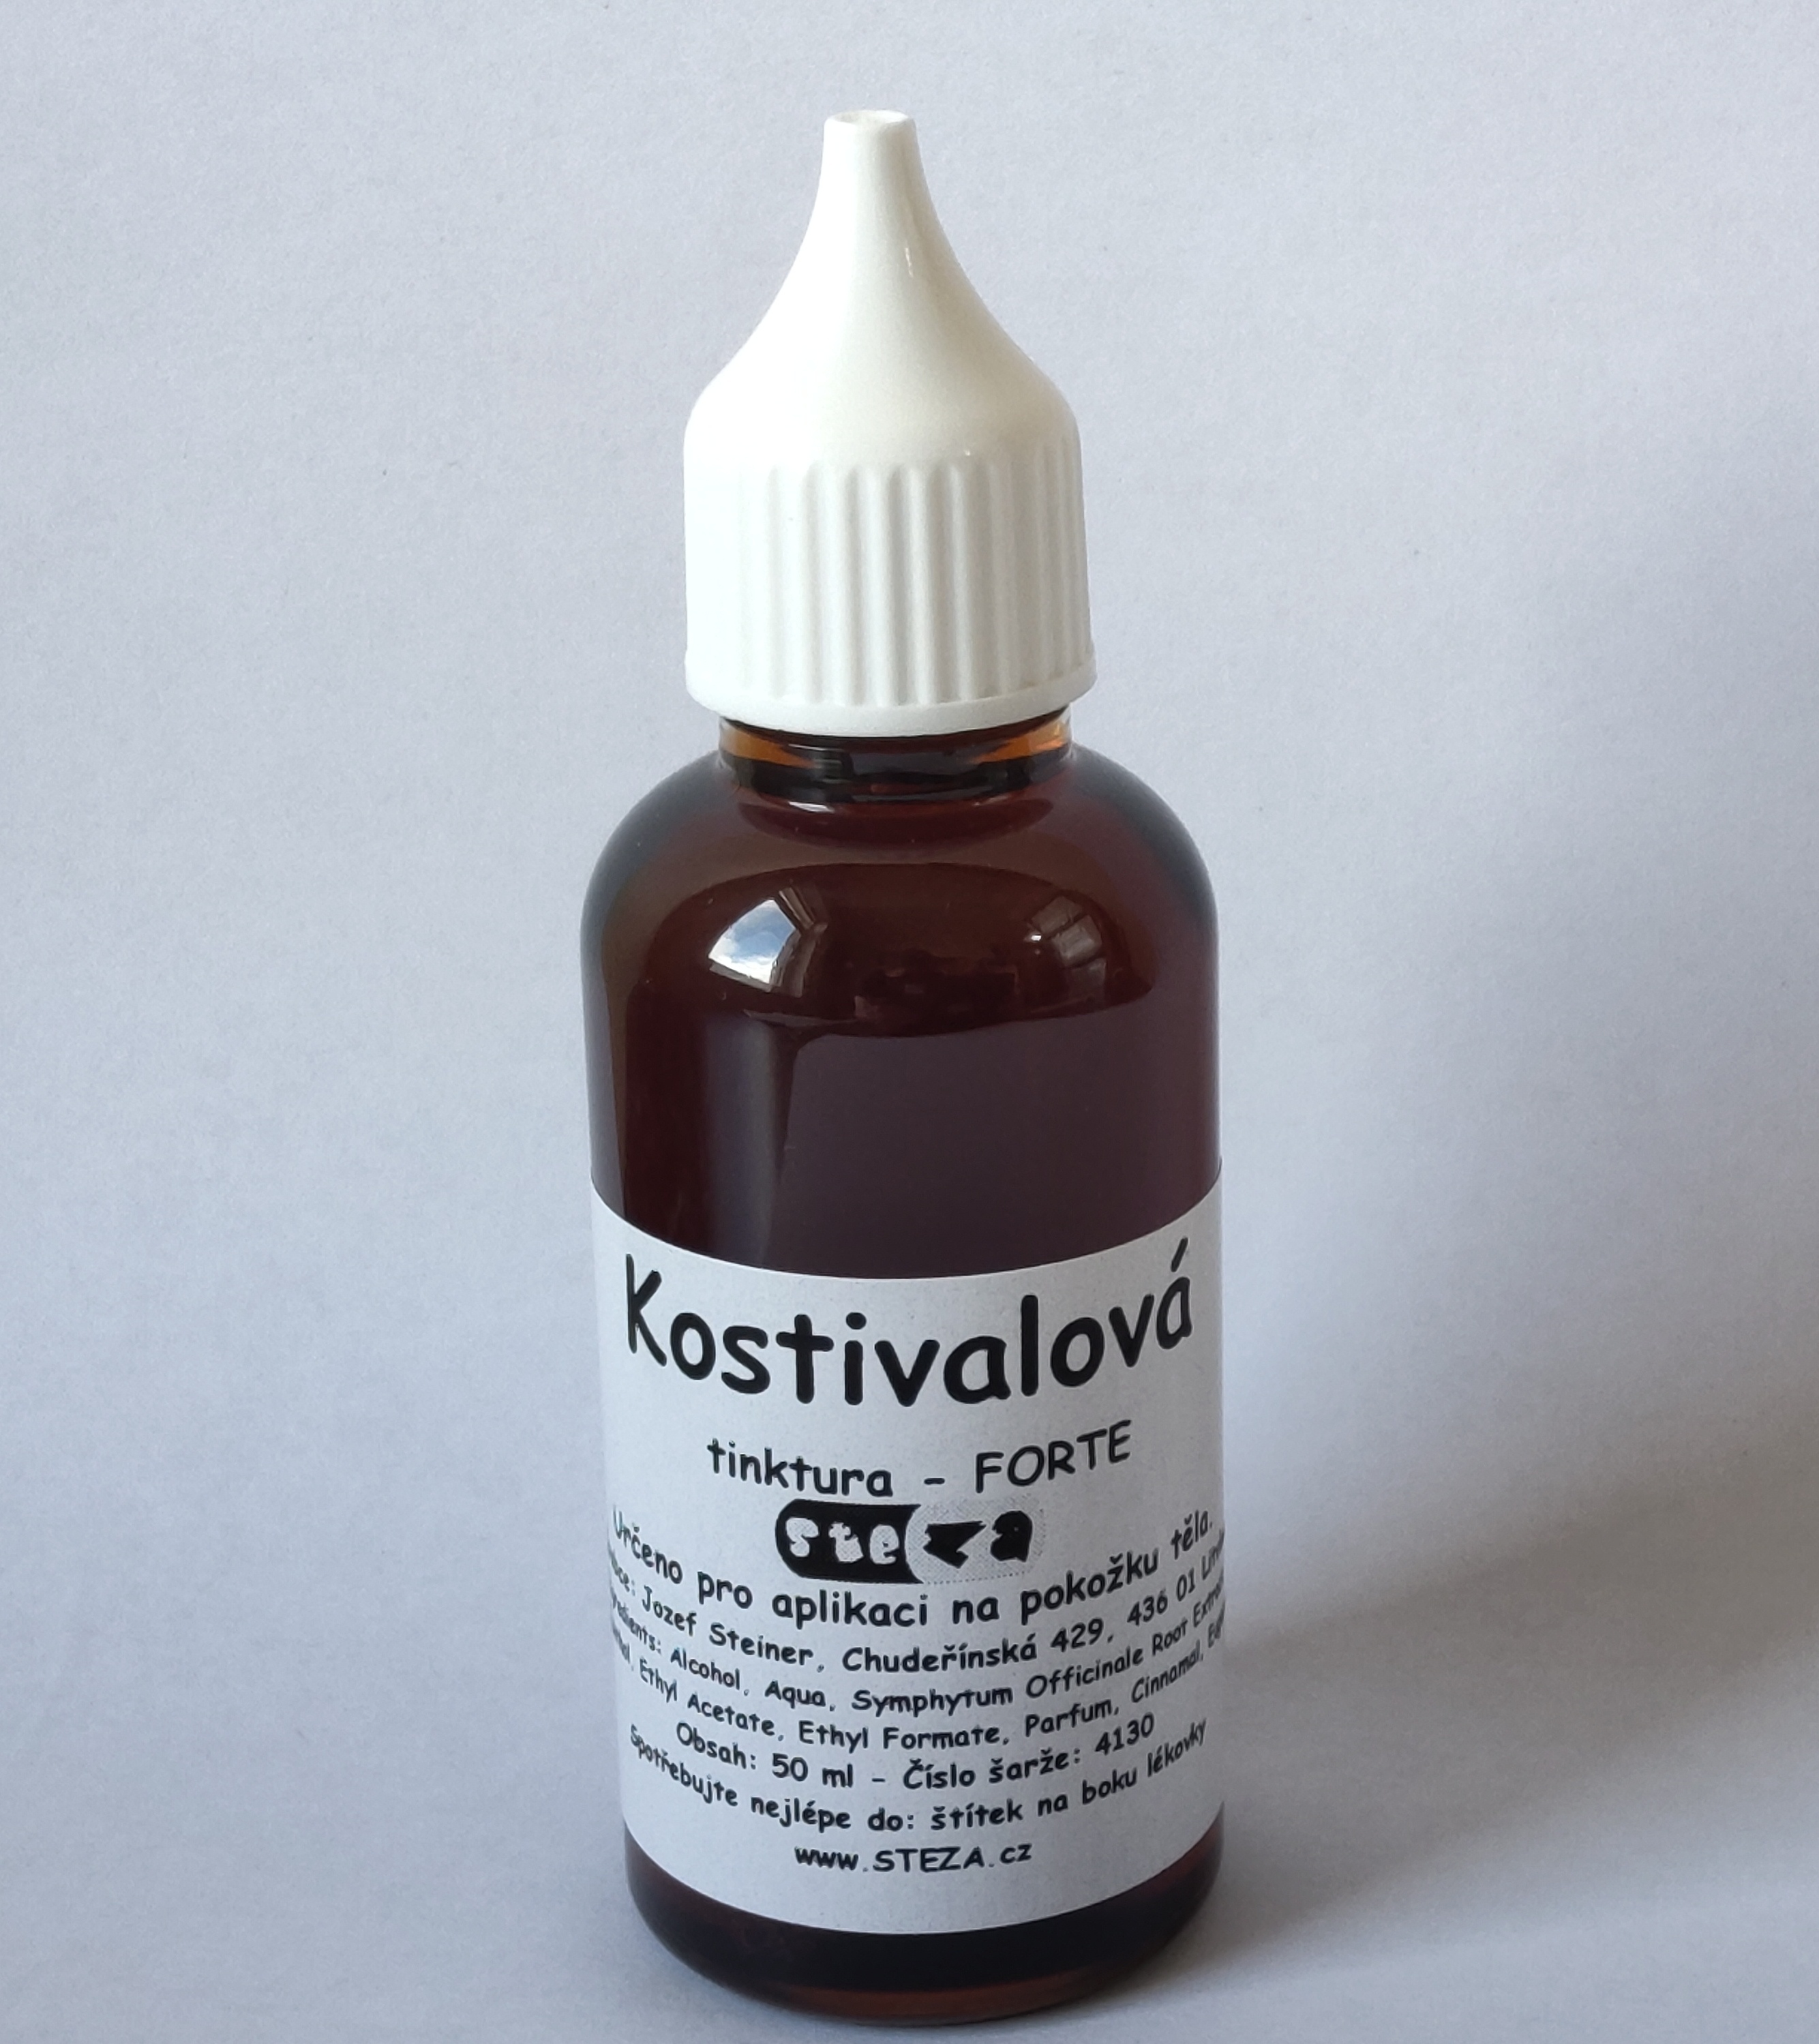 STEZA - Kostivalová tinktura - FORTE 3x lékovka po 50 ml. (Kostivalová tinktura)